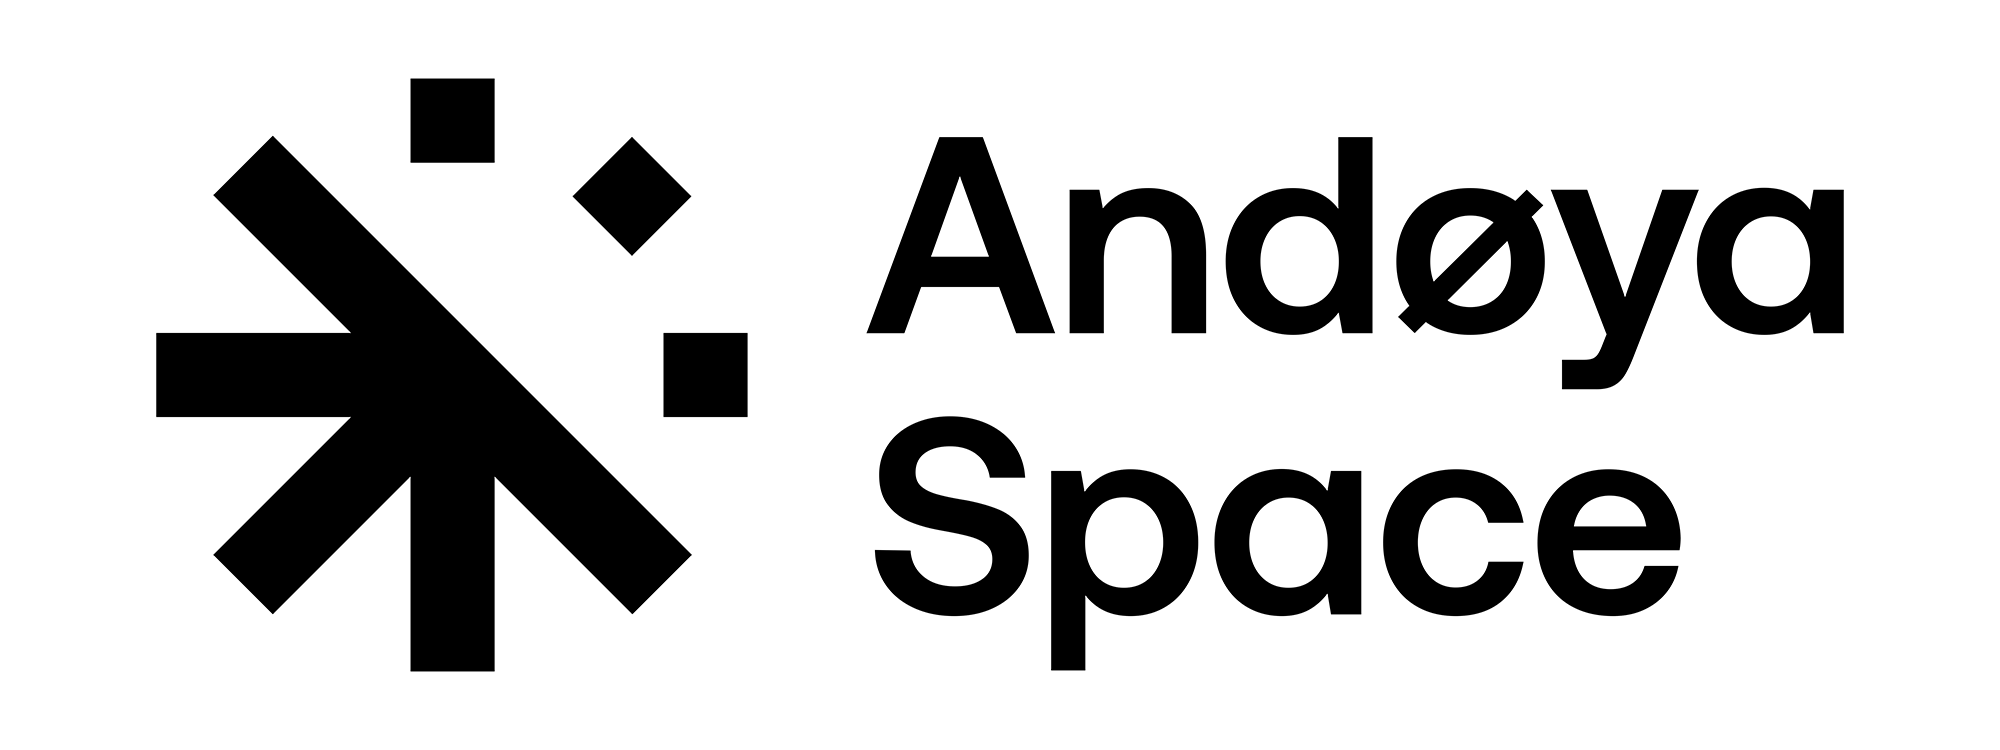 Andoya-Space-Logo-2k-black-transparent2